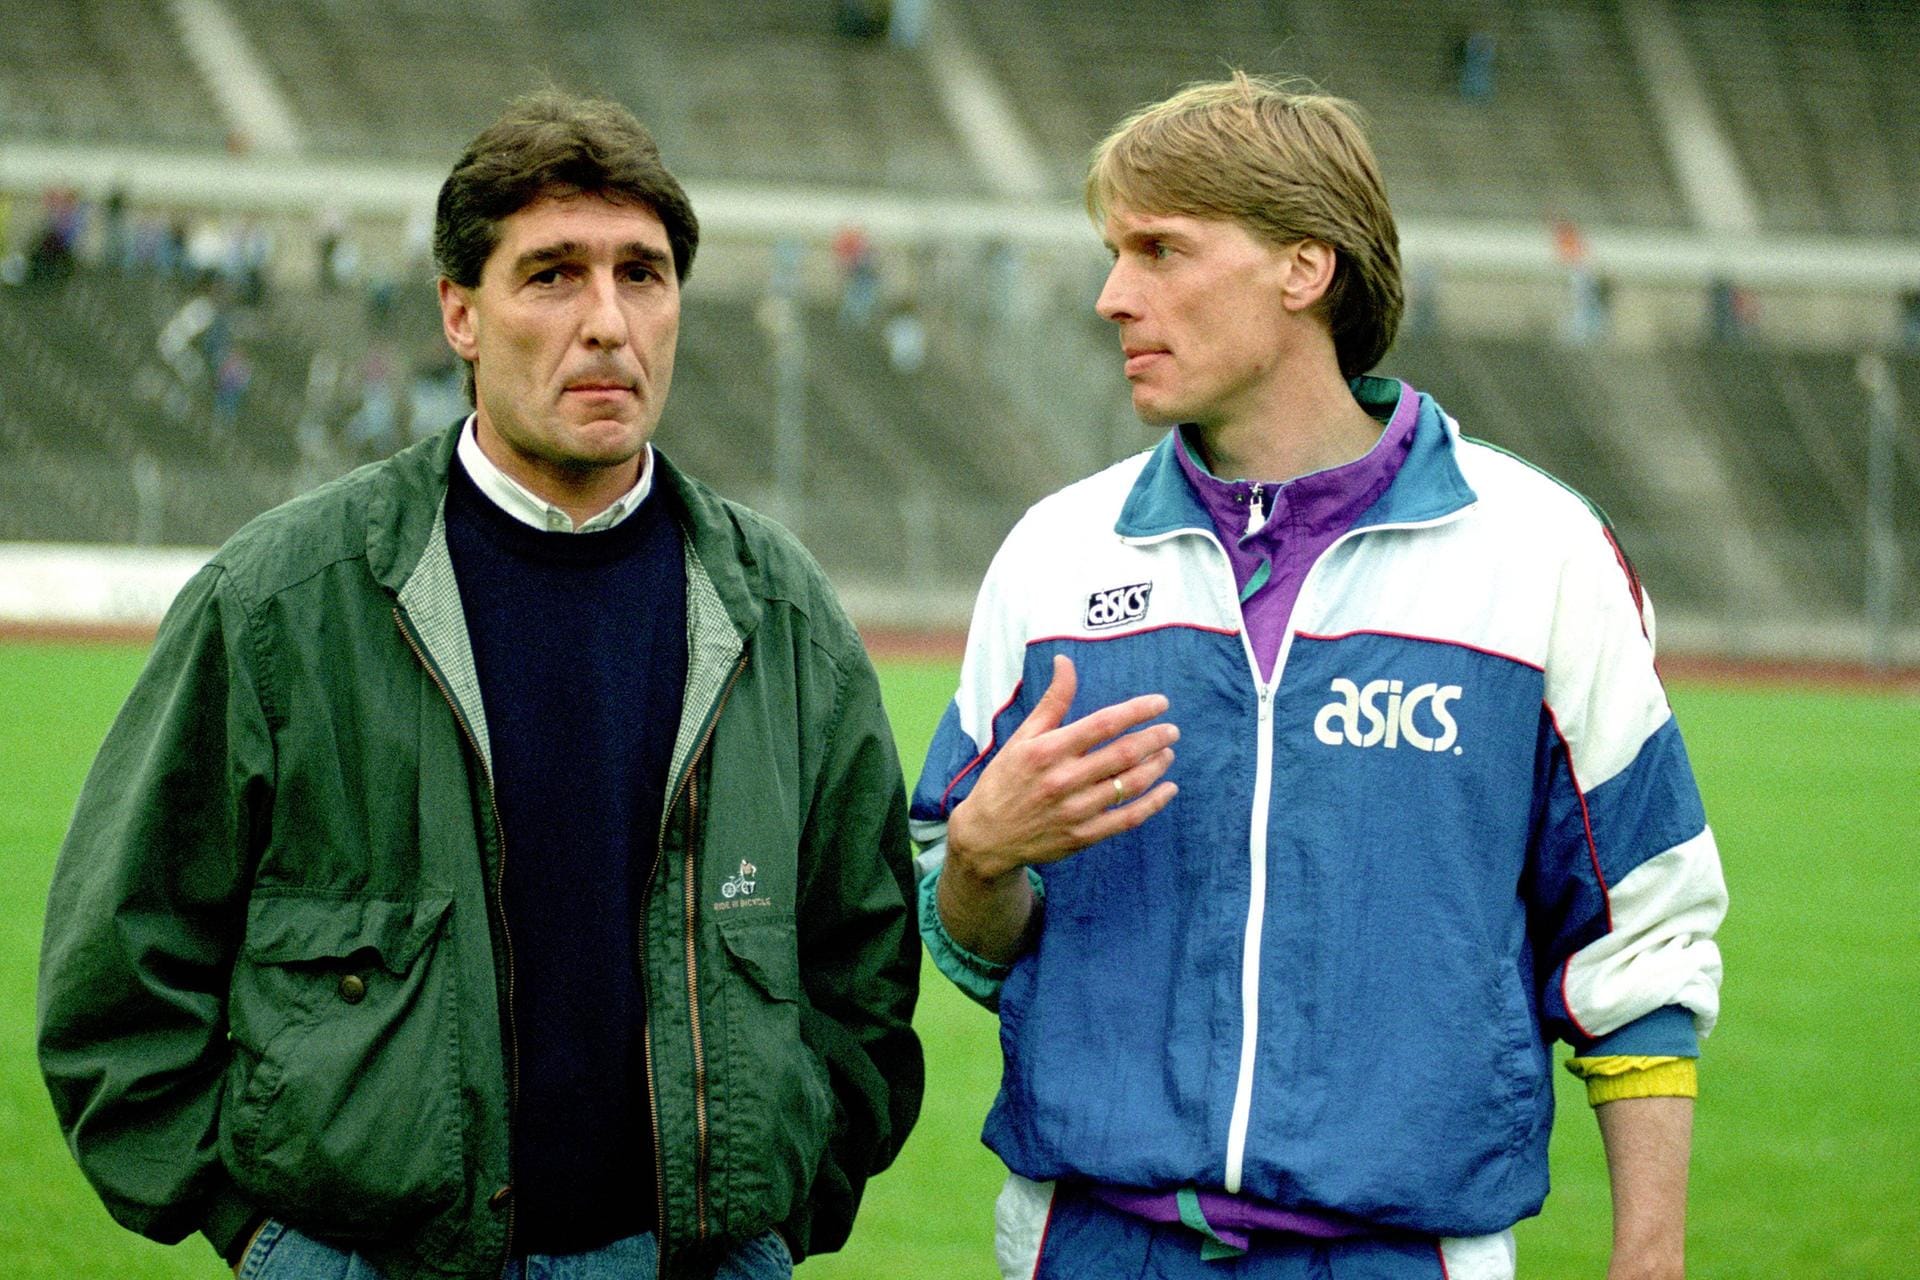 Nach seiner Entlassung auf Schalke wechselte Assauer in den Immobilienbereich und kehrte erst 1990 in den Fußball zurück. Er übernahm beim VfL Oldenburg das Amt des Managers. Hier im Bild mit Trainer Wolfgang Sidka (rechts).